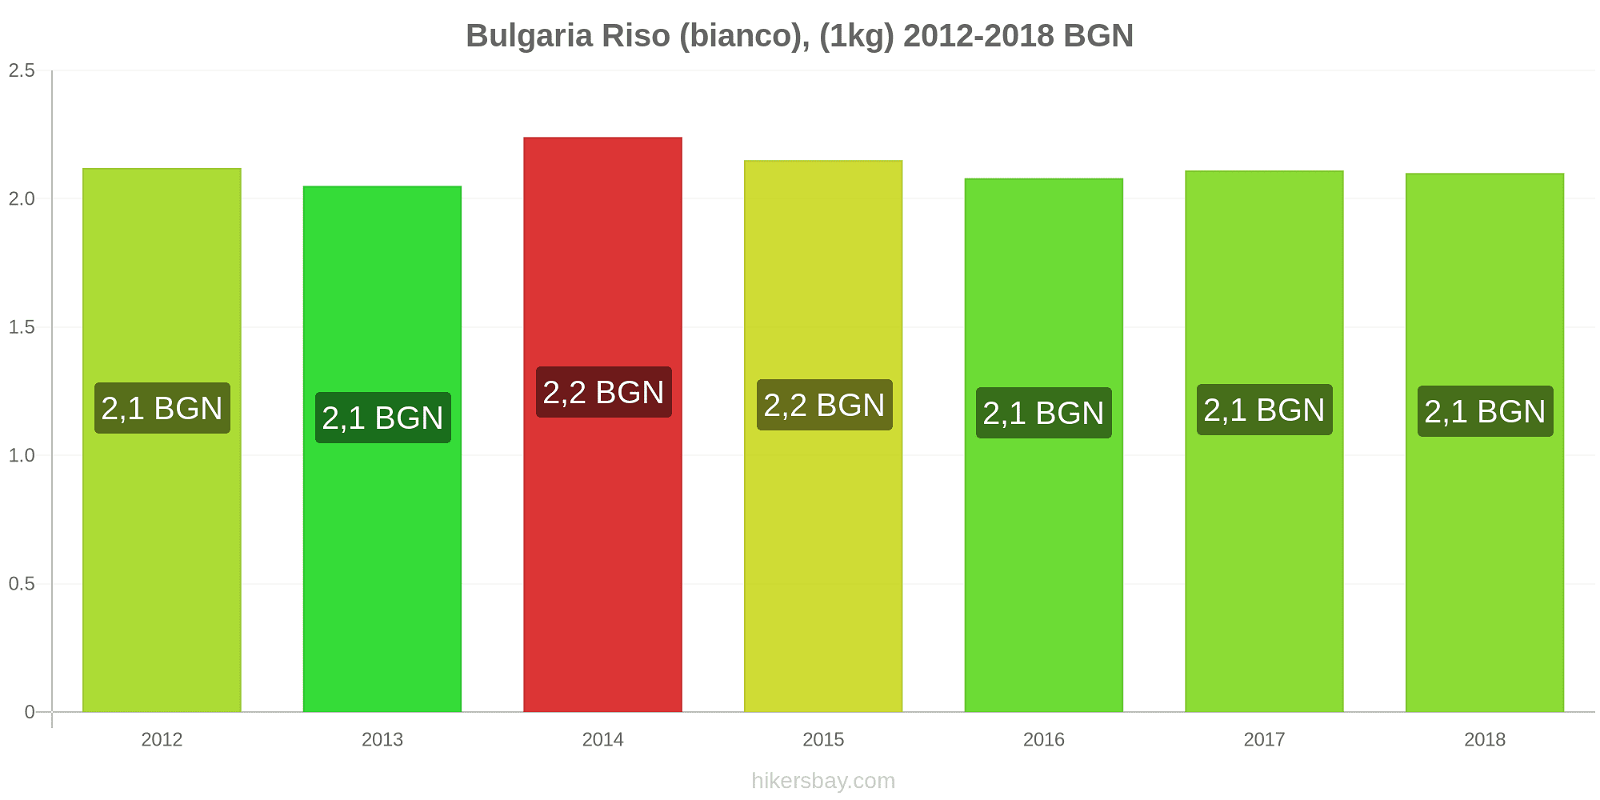 Bulgaria cambi di prezzo Chilo di riso bianco hikersbay.com